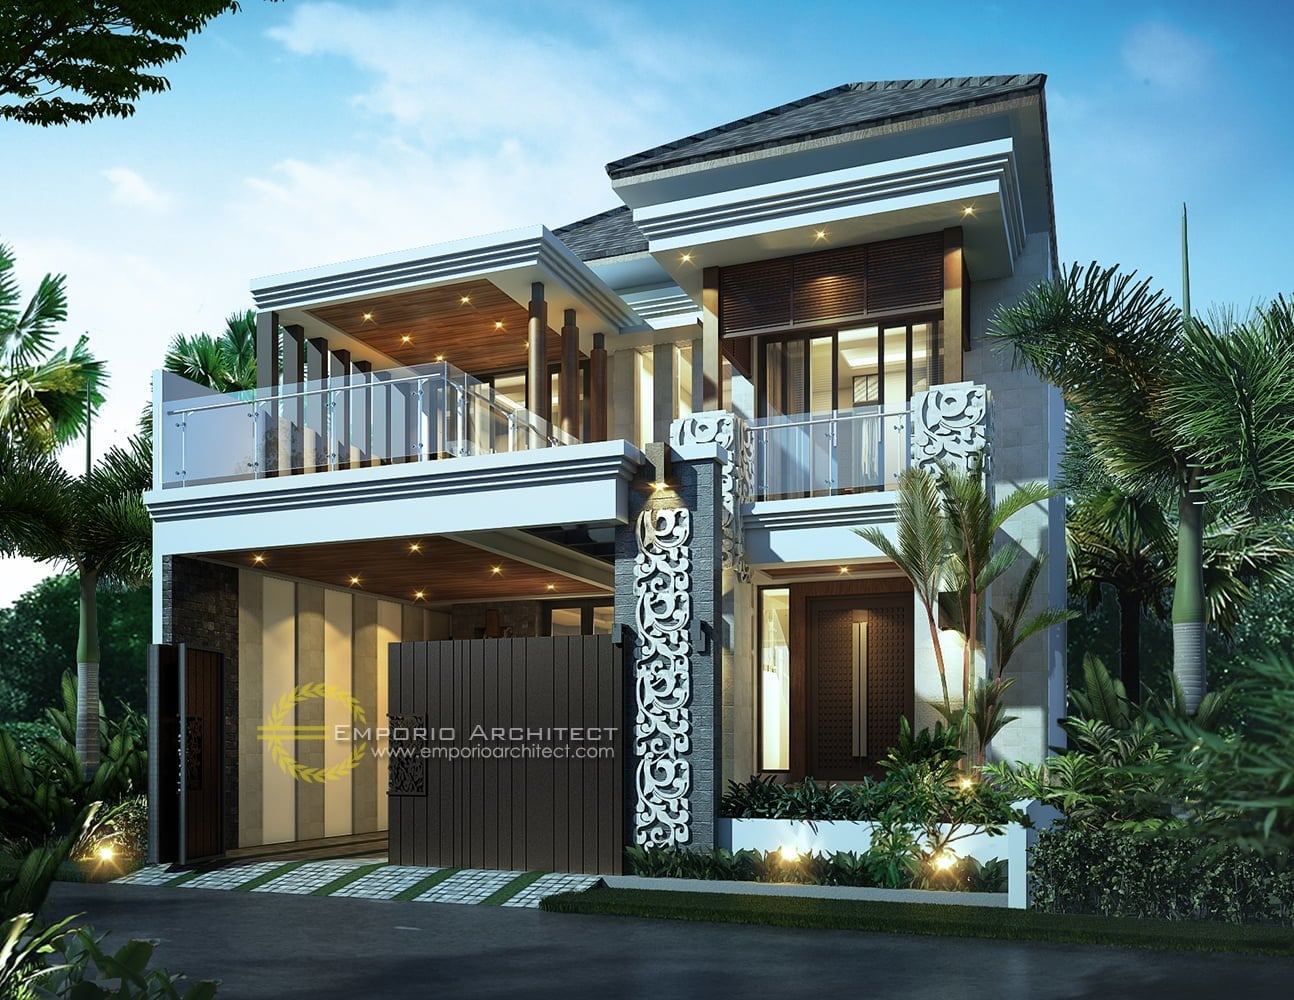 16 Model Desain Rumah Nuansa Bali Modern Yang Belum Banyak